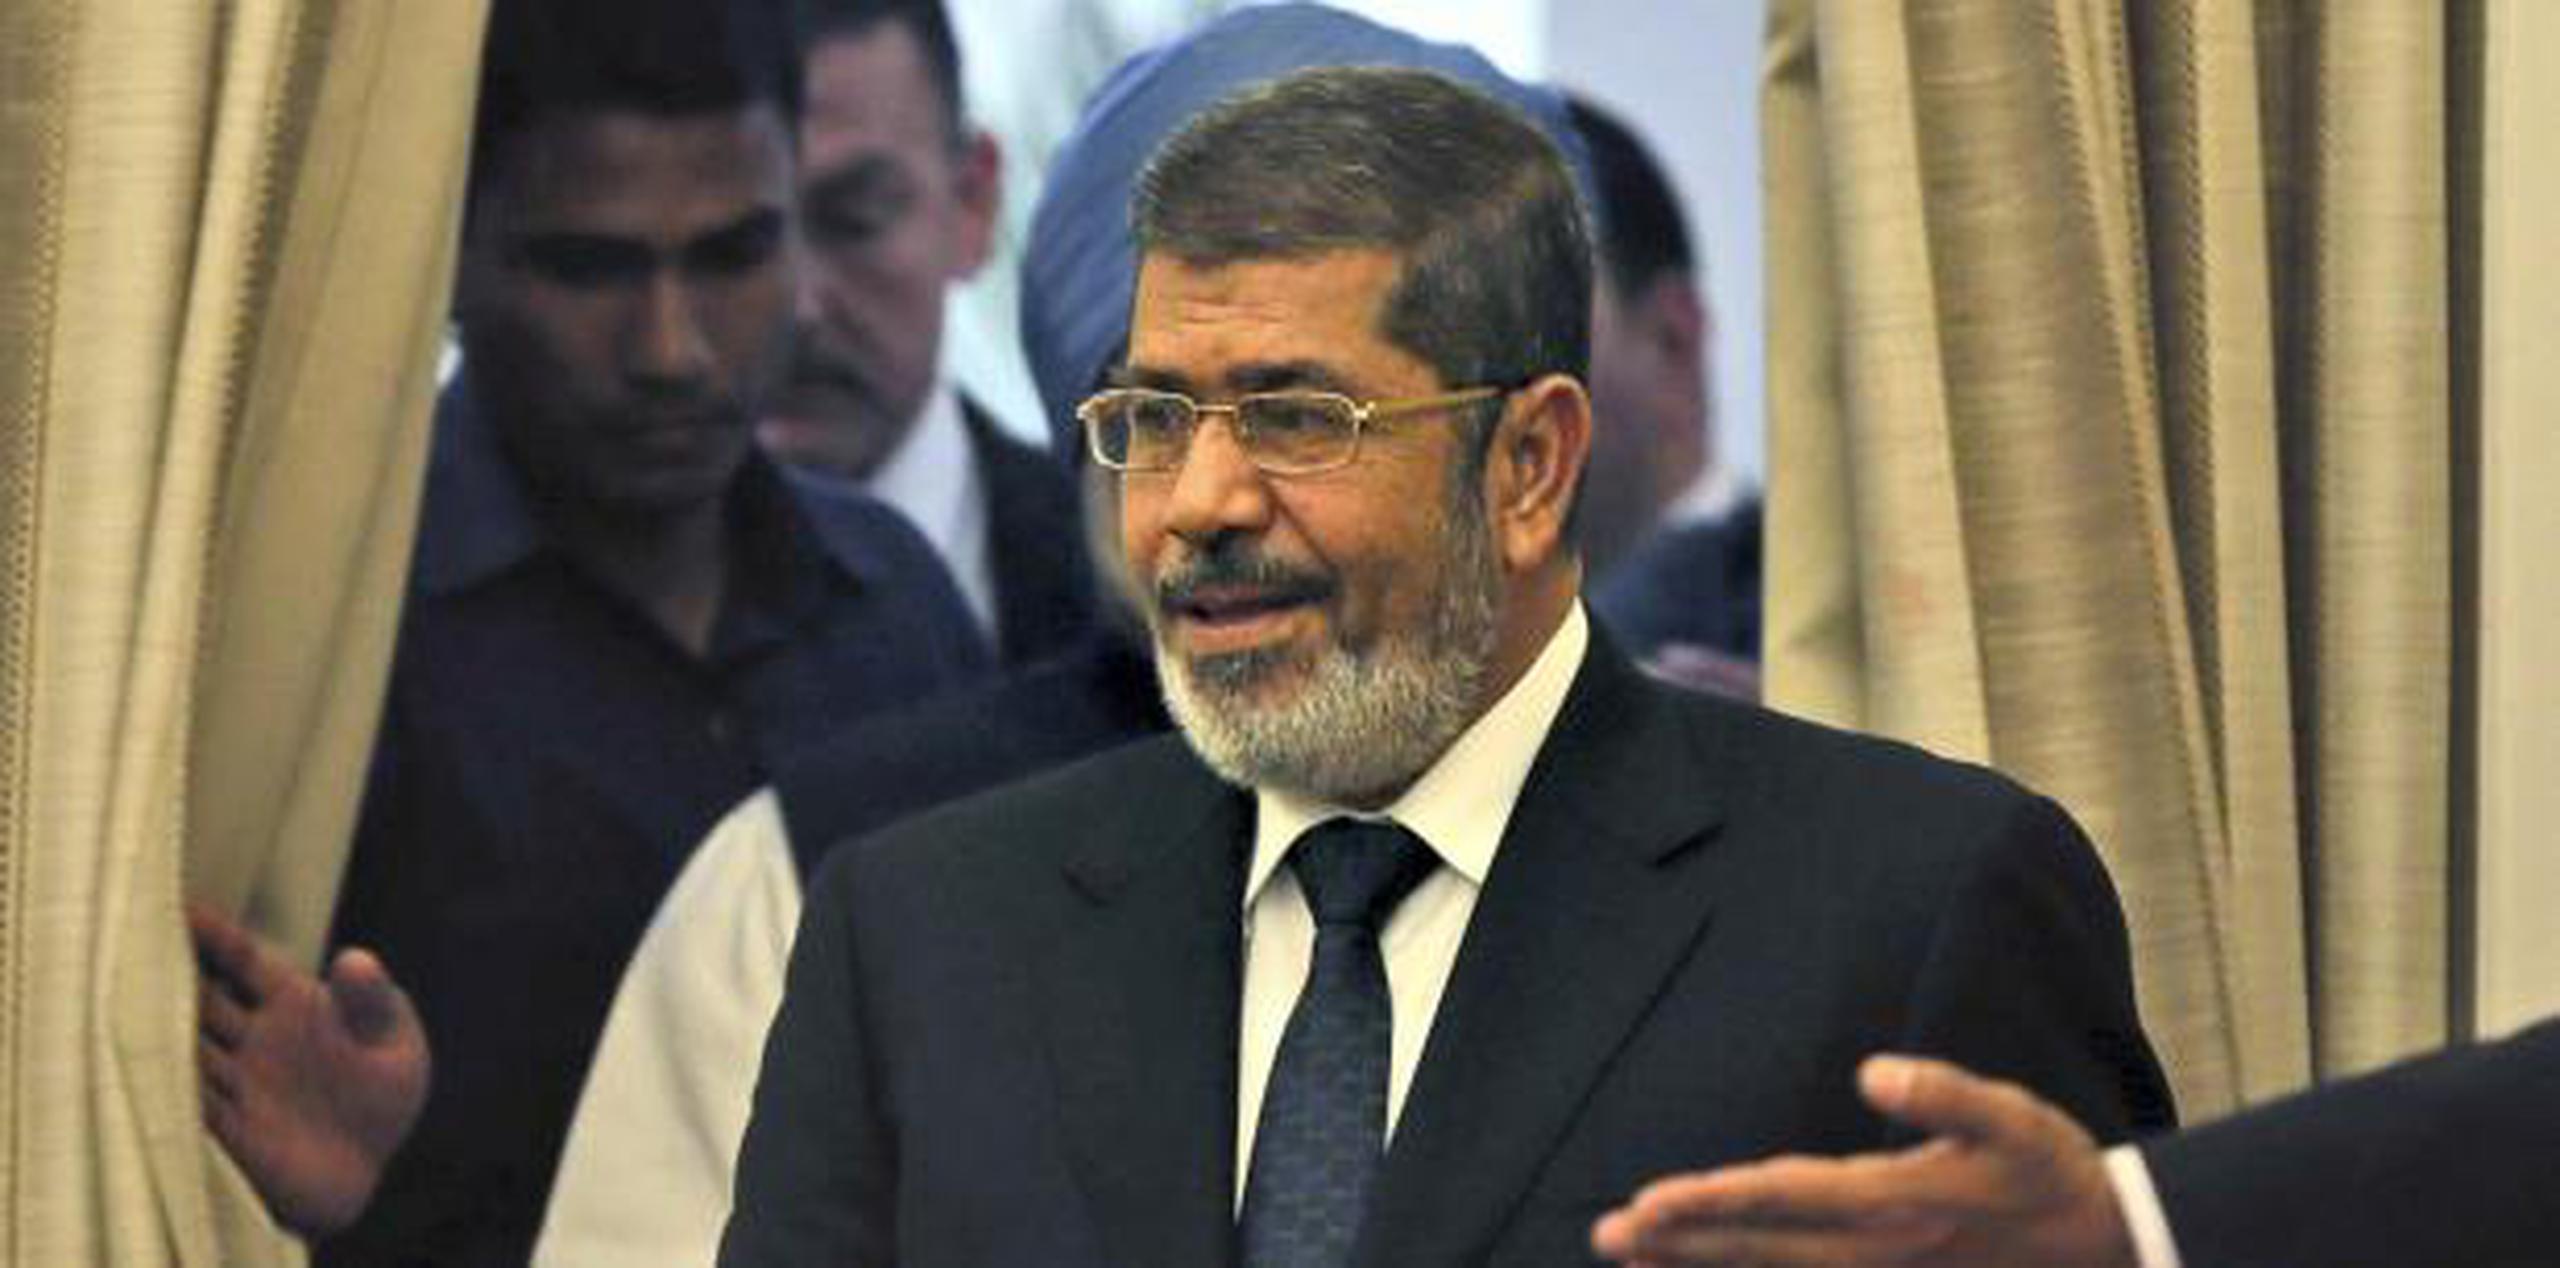 Las agencias de seguridad se negaron a permitir que Morsi fuera enterrado en el cementerio familiar. (AP)